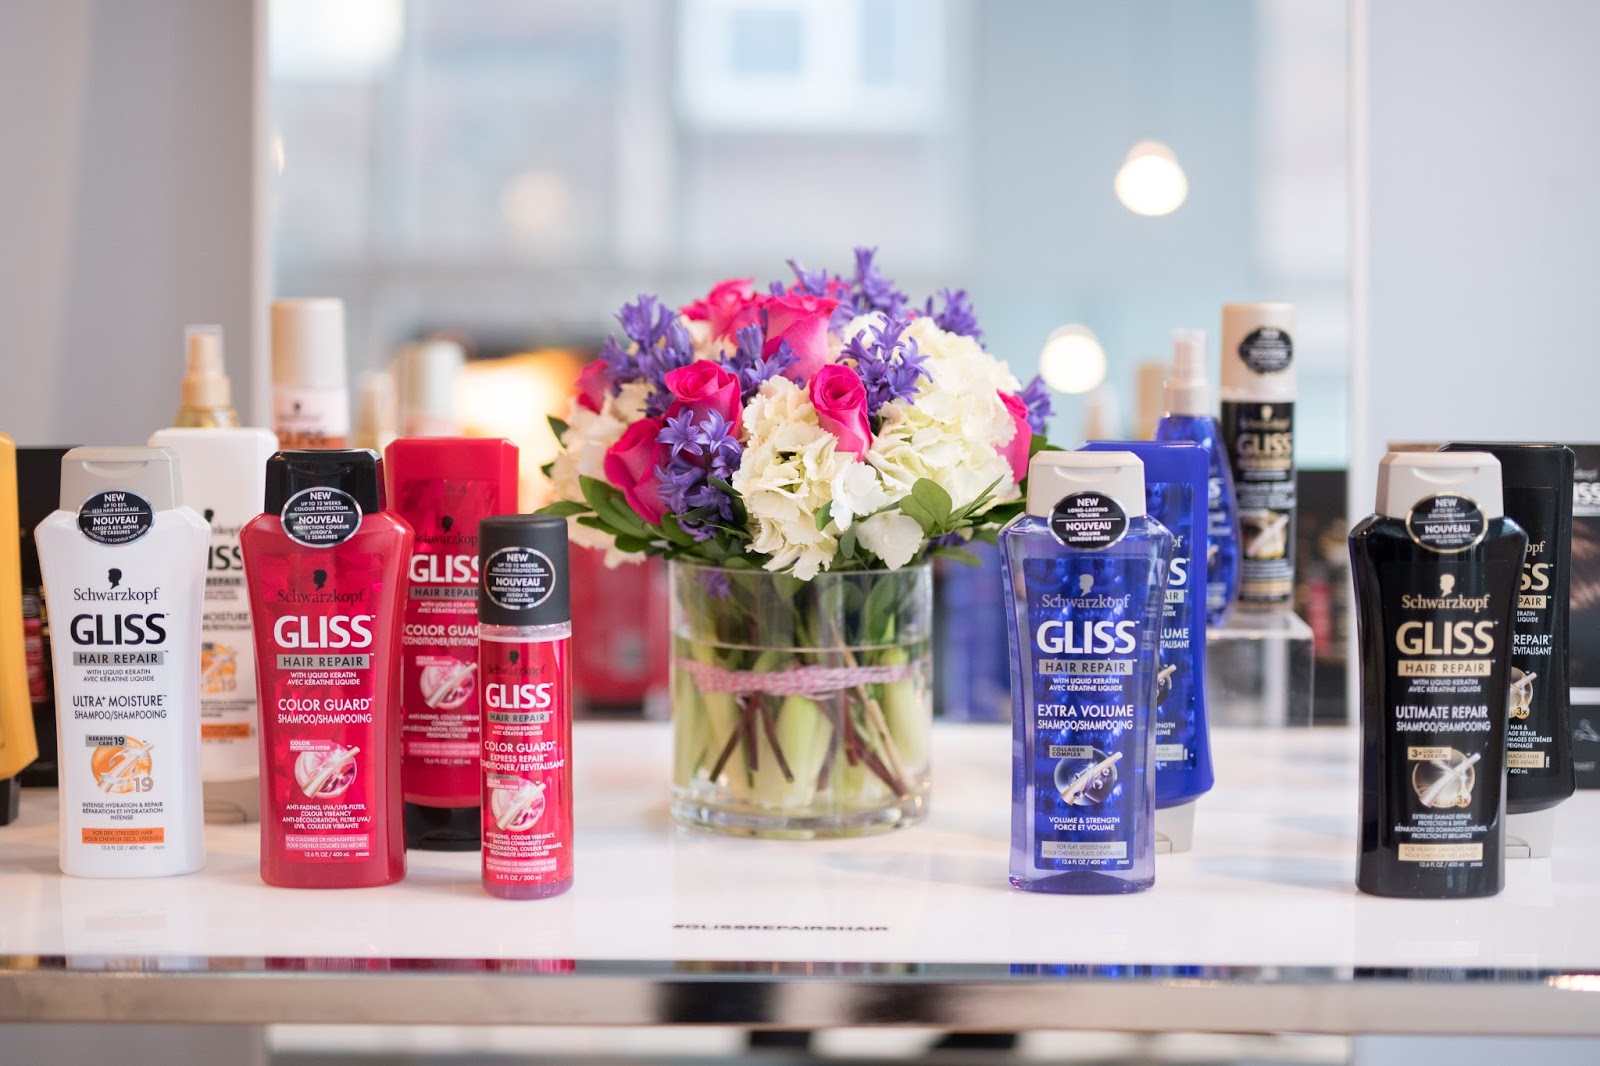 gliis hair repair shampoo conditioner damaged shoppers